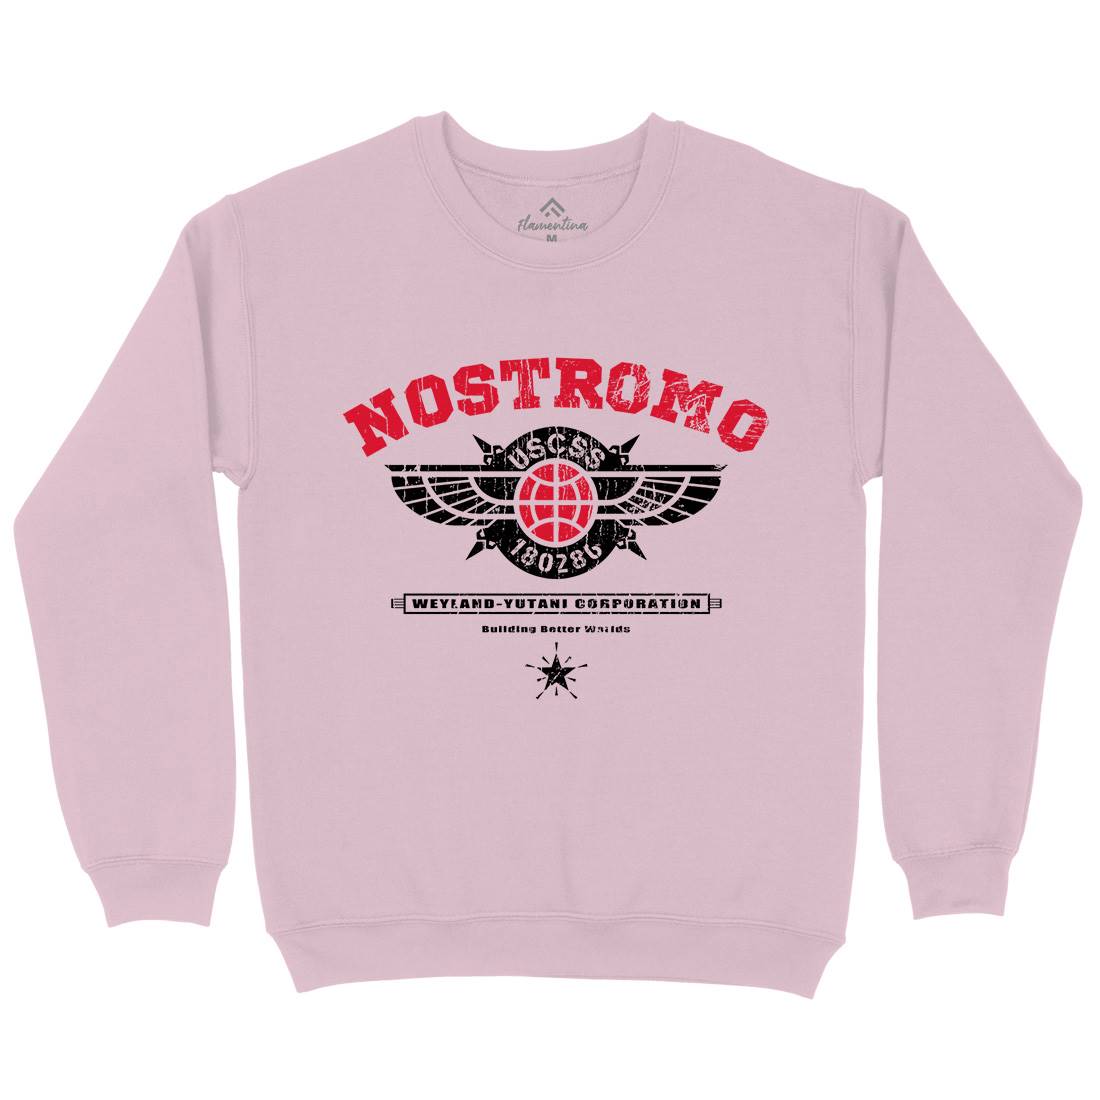 Uscss Nostromo Kids Crew Neck Sweatshirt Space D271